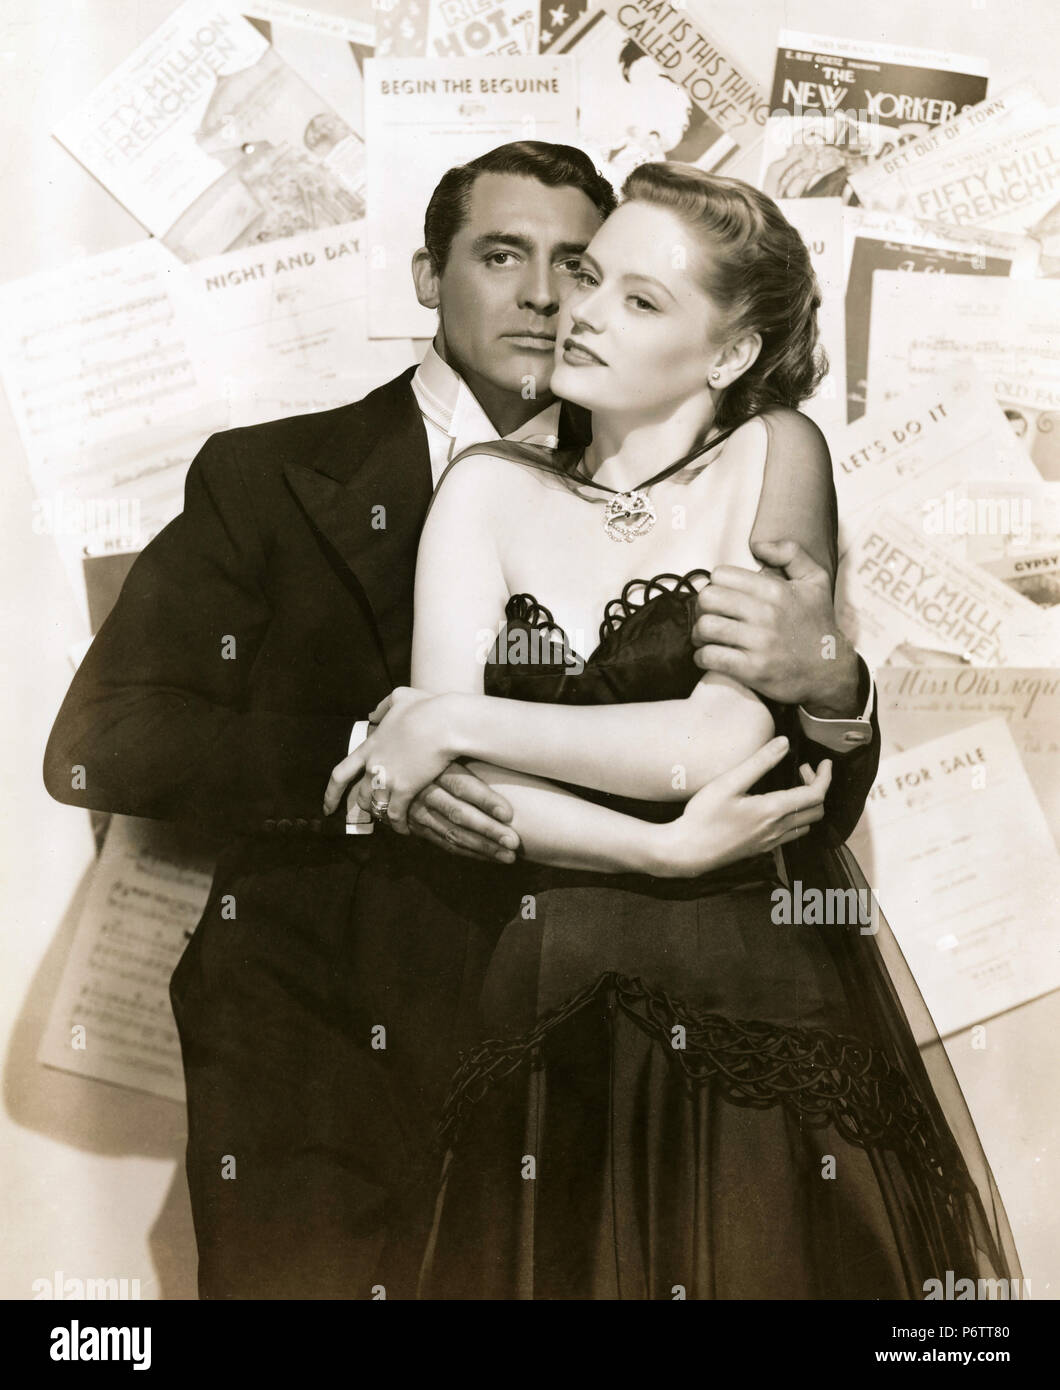 Acteurs Cary Grant et Alexis Smith dans le film nuit et jour, 1946 Banque D'Images